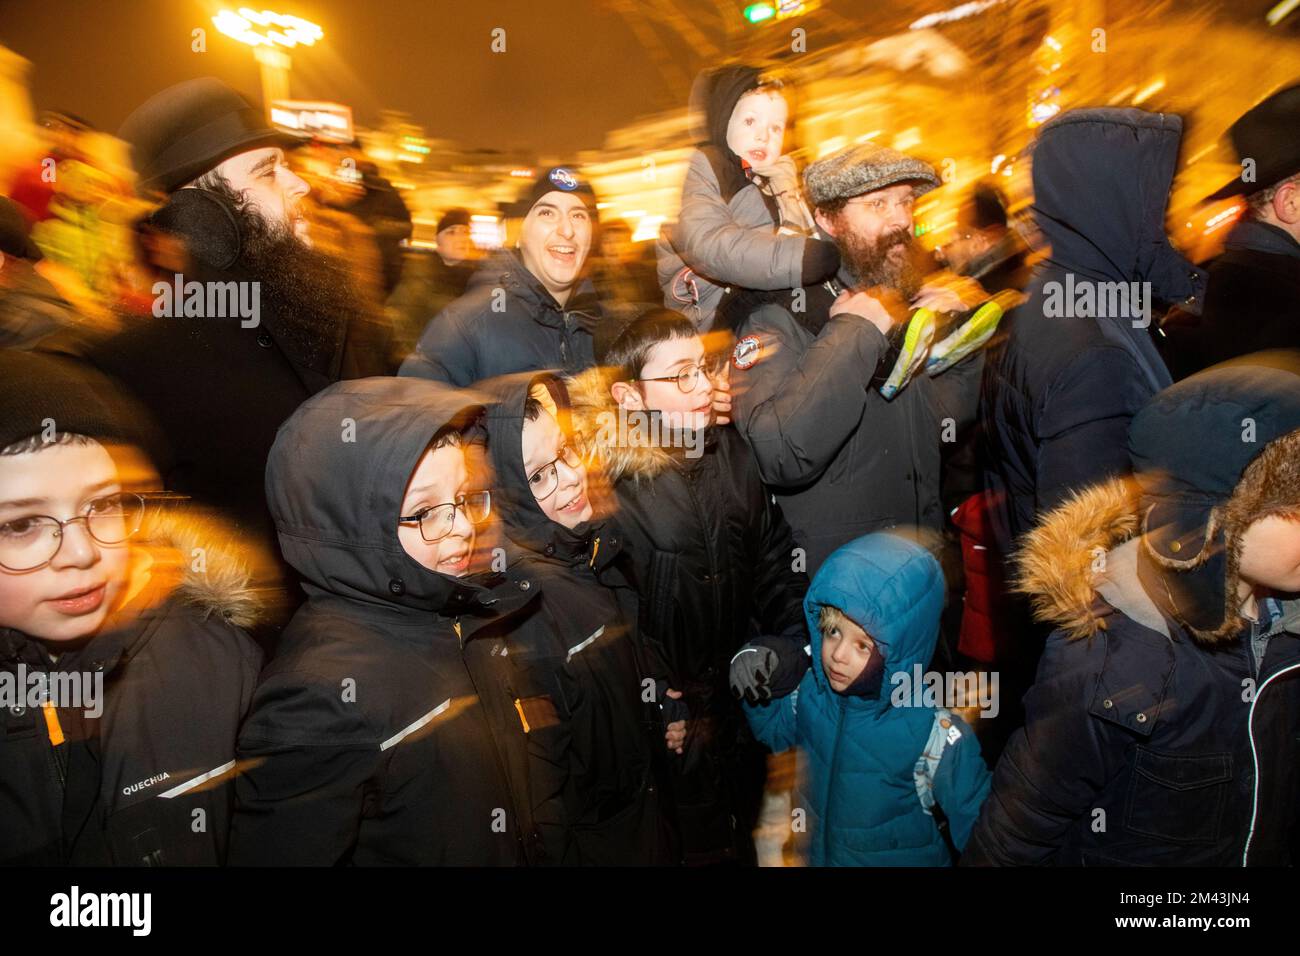 Moskau, Russland. 18.. Dezember 2022. Die Menschen tanzen auf einer Veranstaltung zur Feier von Hanukka auf dem Platz der Revolution in Moskau, Russland. Hanukkah ist ein jüdisches Festival, das der Wiedererlangung Jerusalems im 2.. Jahrhundert v. Chr. gedenkt. Dieses Jahr wird der 18-26. Dezember gefeiert. Nikolay Vinokurov/Alamy Live News Stockfoto